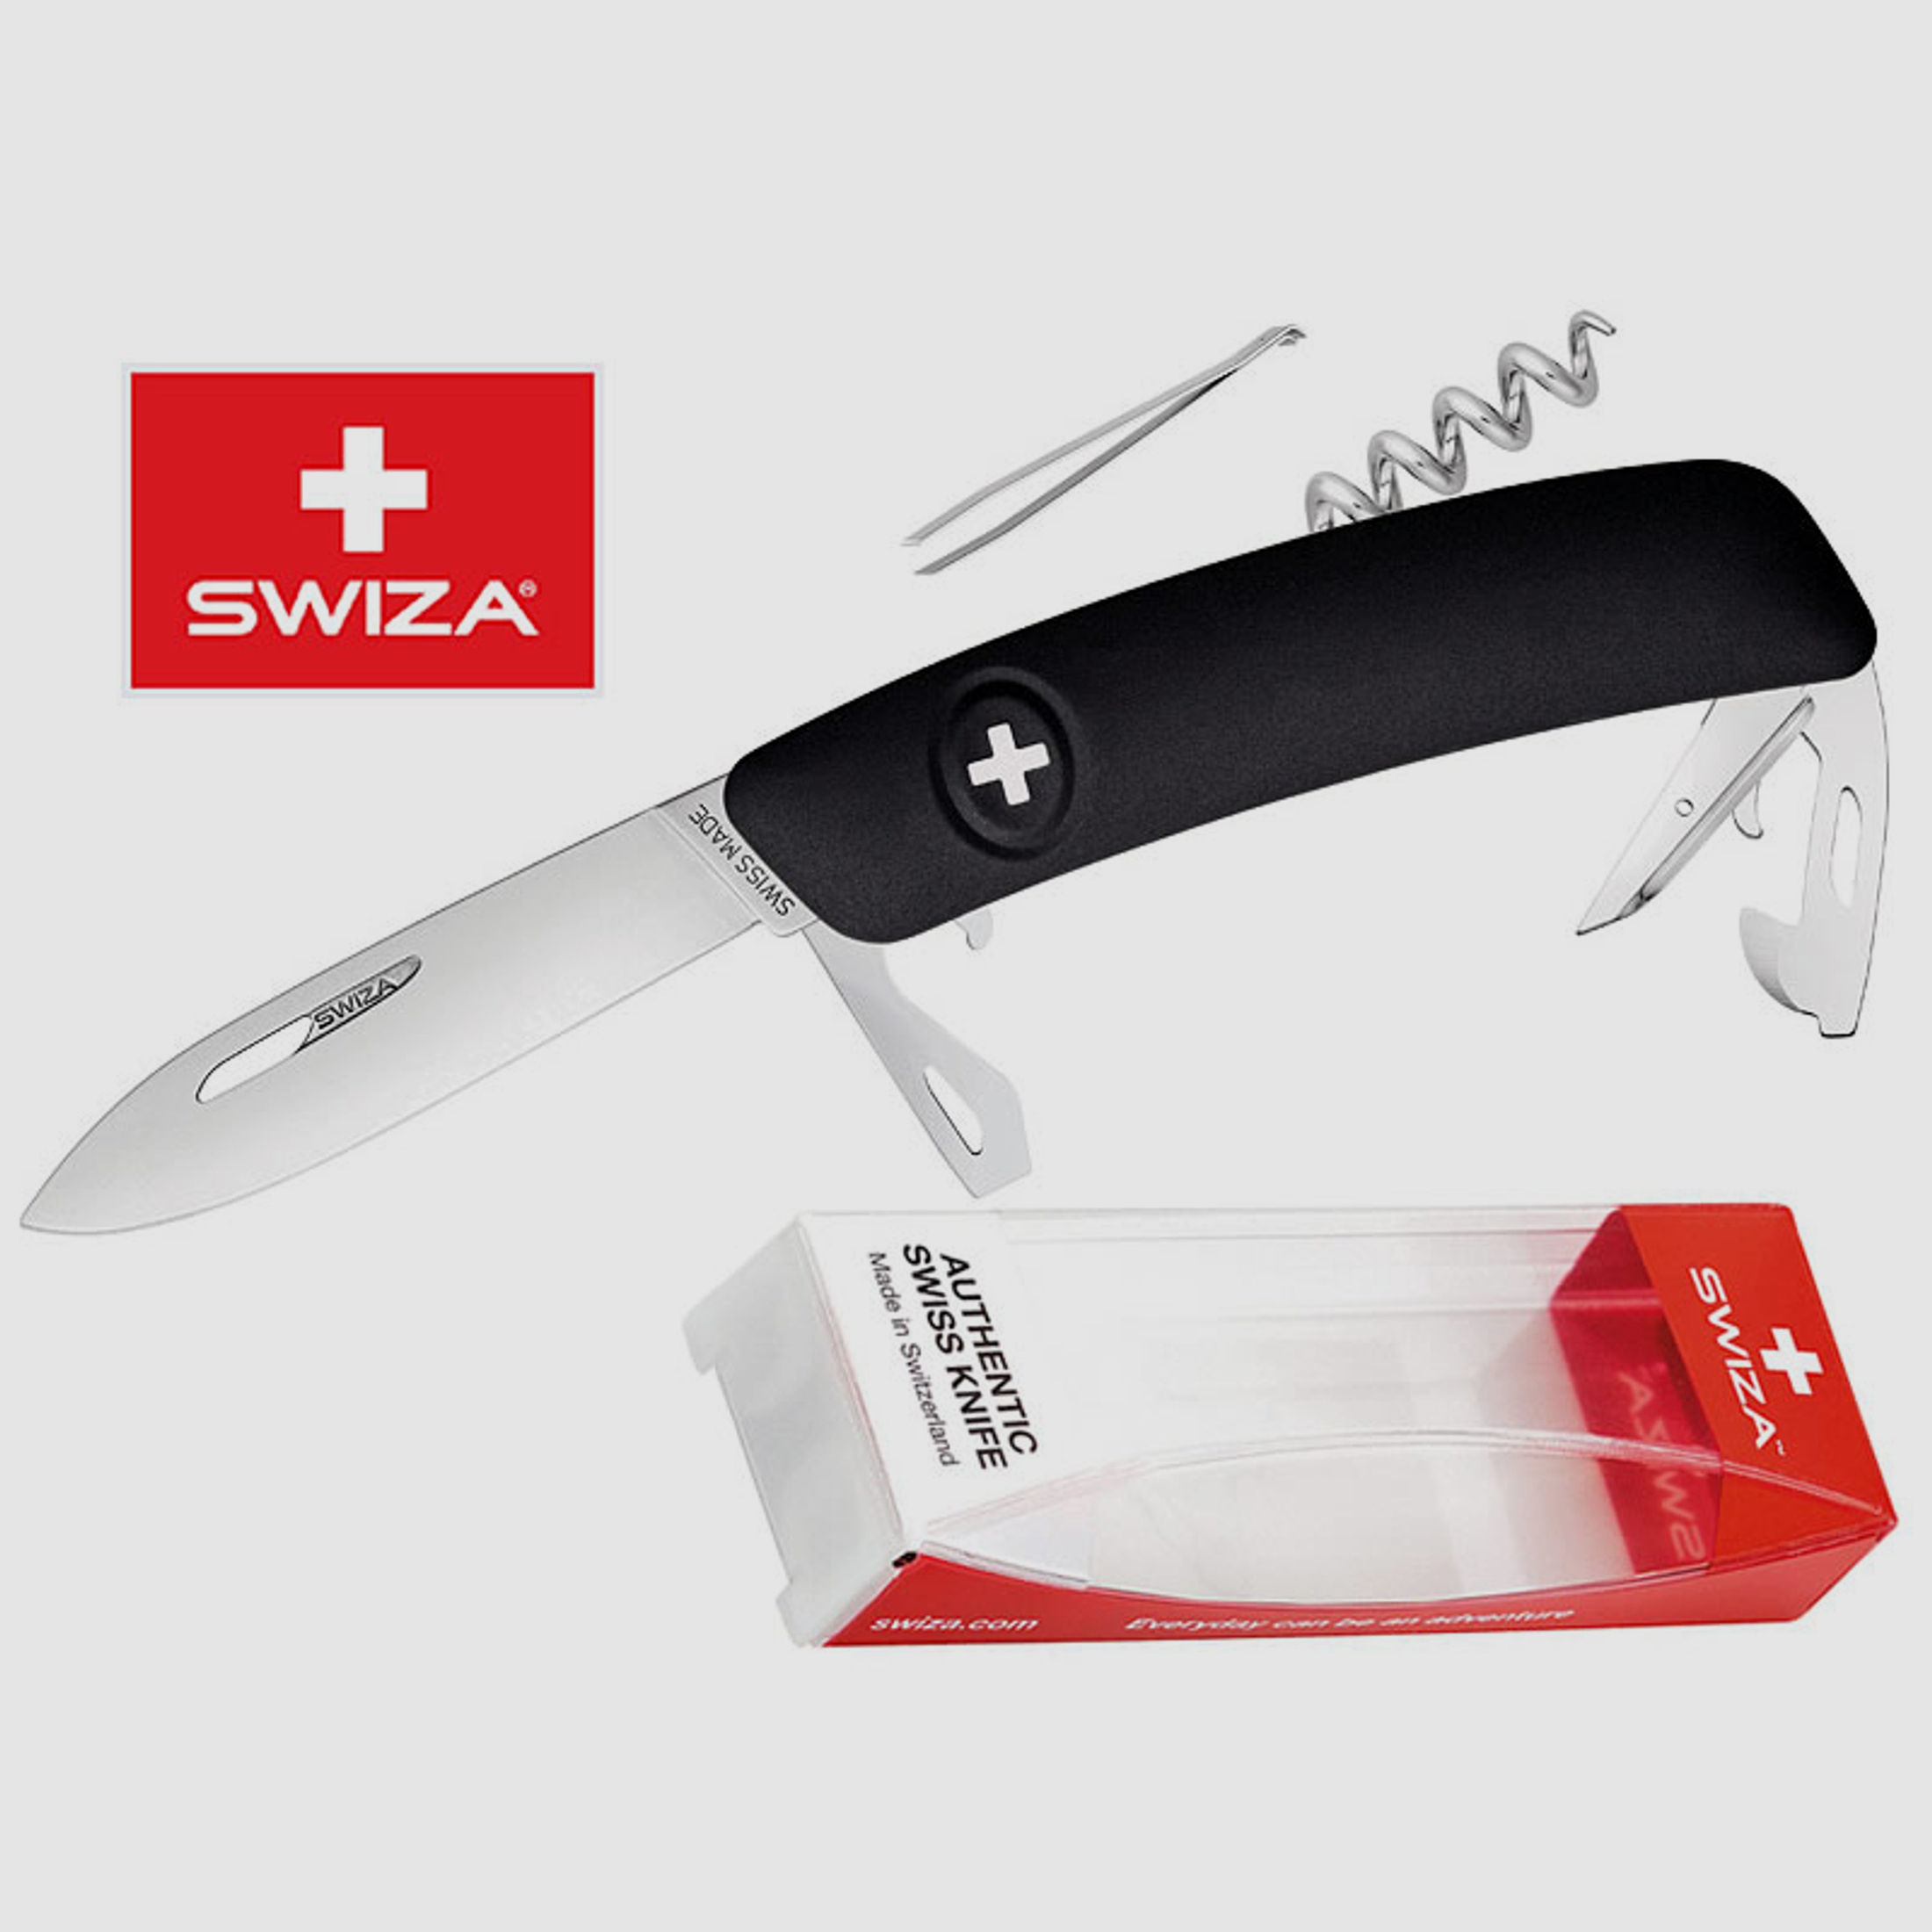 SWIZA Schweizer Messer D03, schwarz, Edelstahl 440, 11 Funktionen, Korkenzieher, Multi-Tool